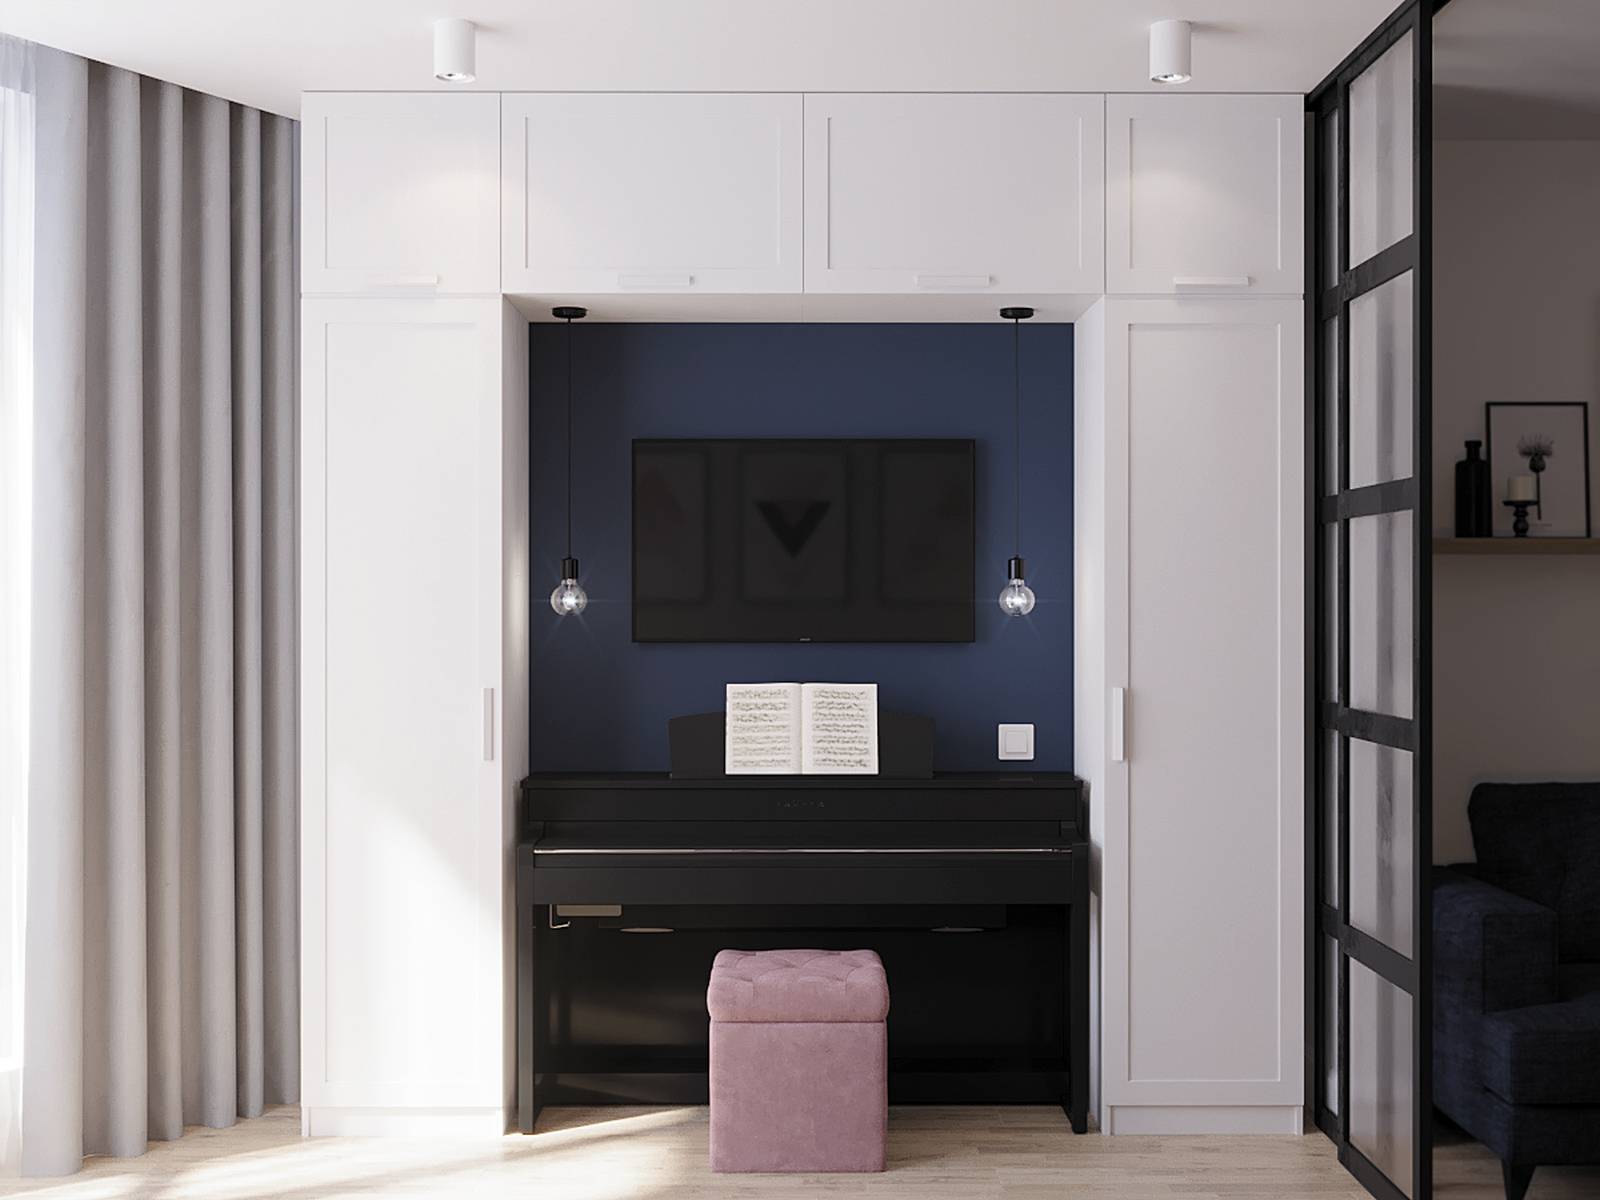 Đối diện giường ngủ là khu vực tủ lưu trữ màu trắng với khoảng trống sơn màu xanh lam đậm, là nơi đặt chiếc đàn piano yêu thích của nữ chủ nhân. Thêm vào đó là chiếc ghế màu hồng phấn, giữ được sự phối màu xuyên suốt không gian sống.